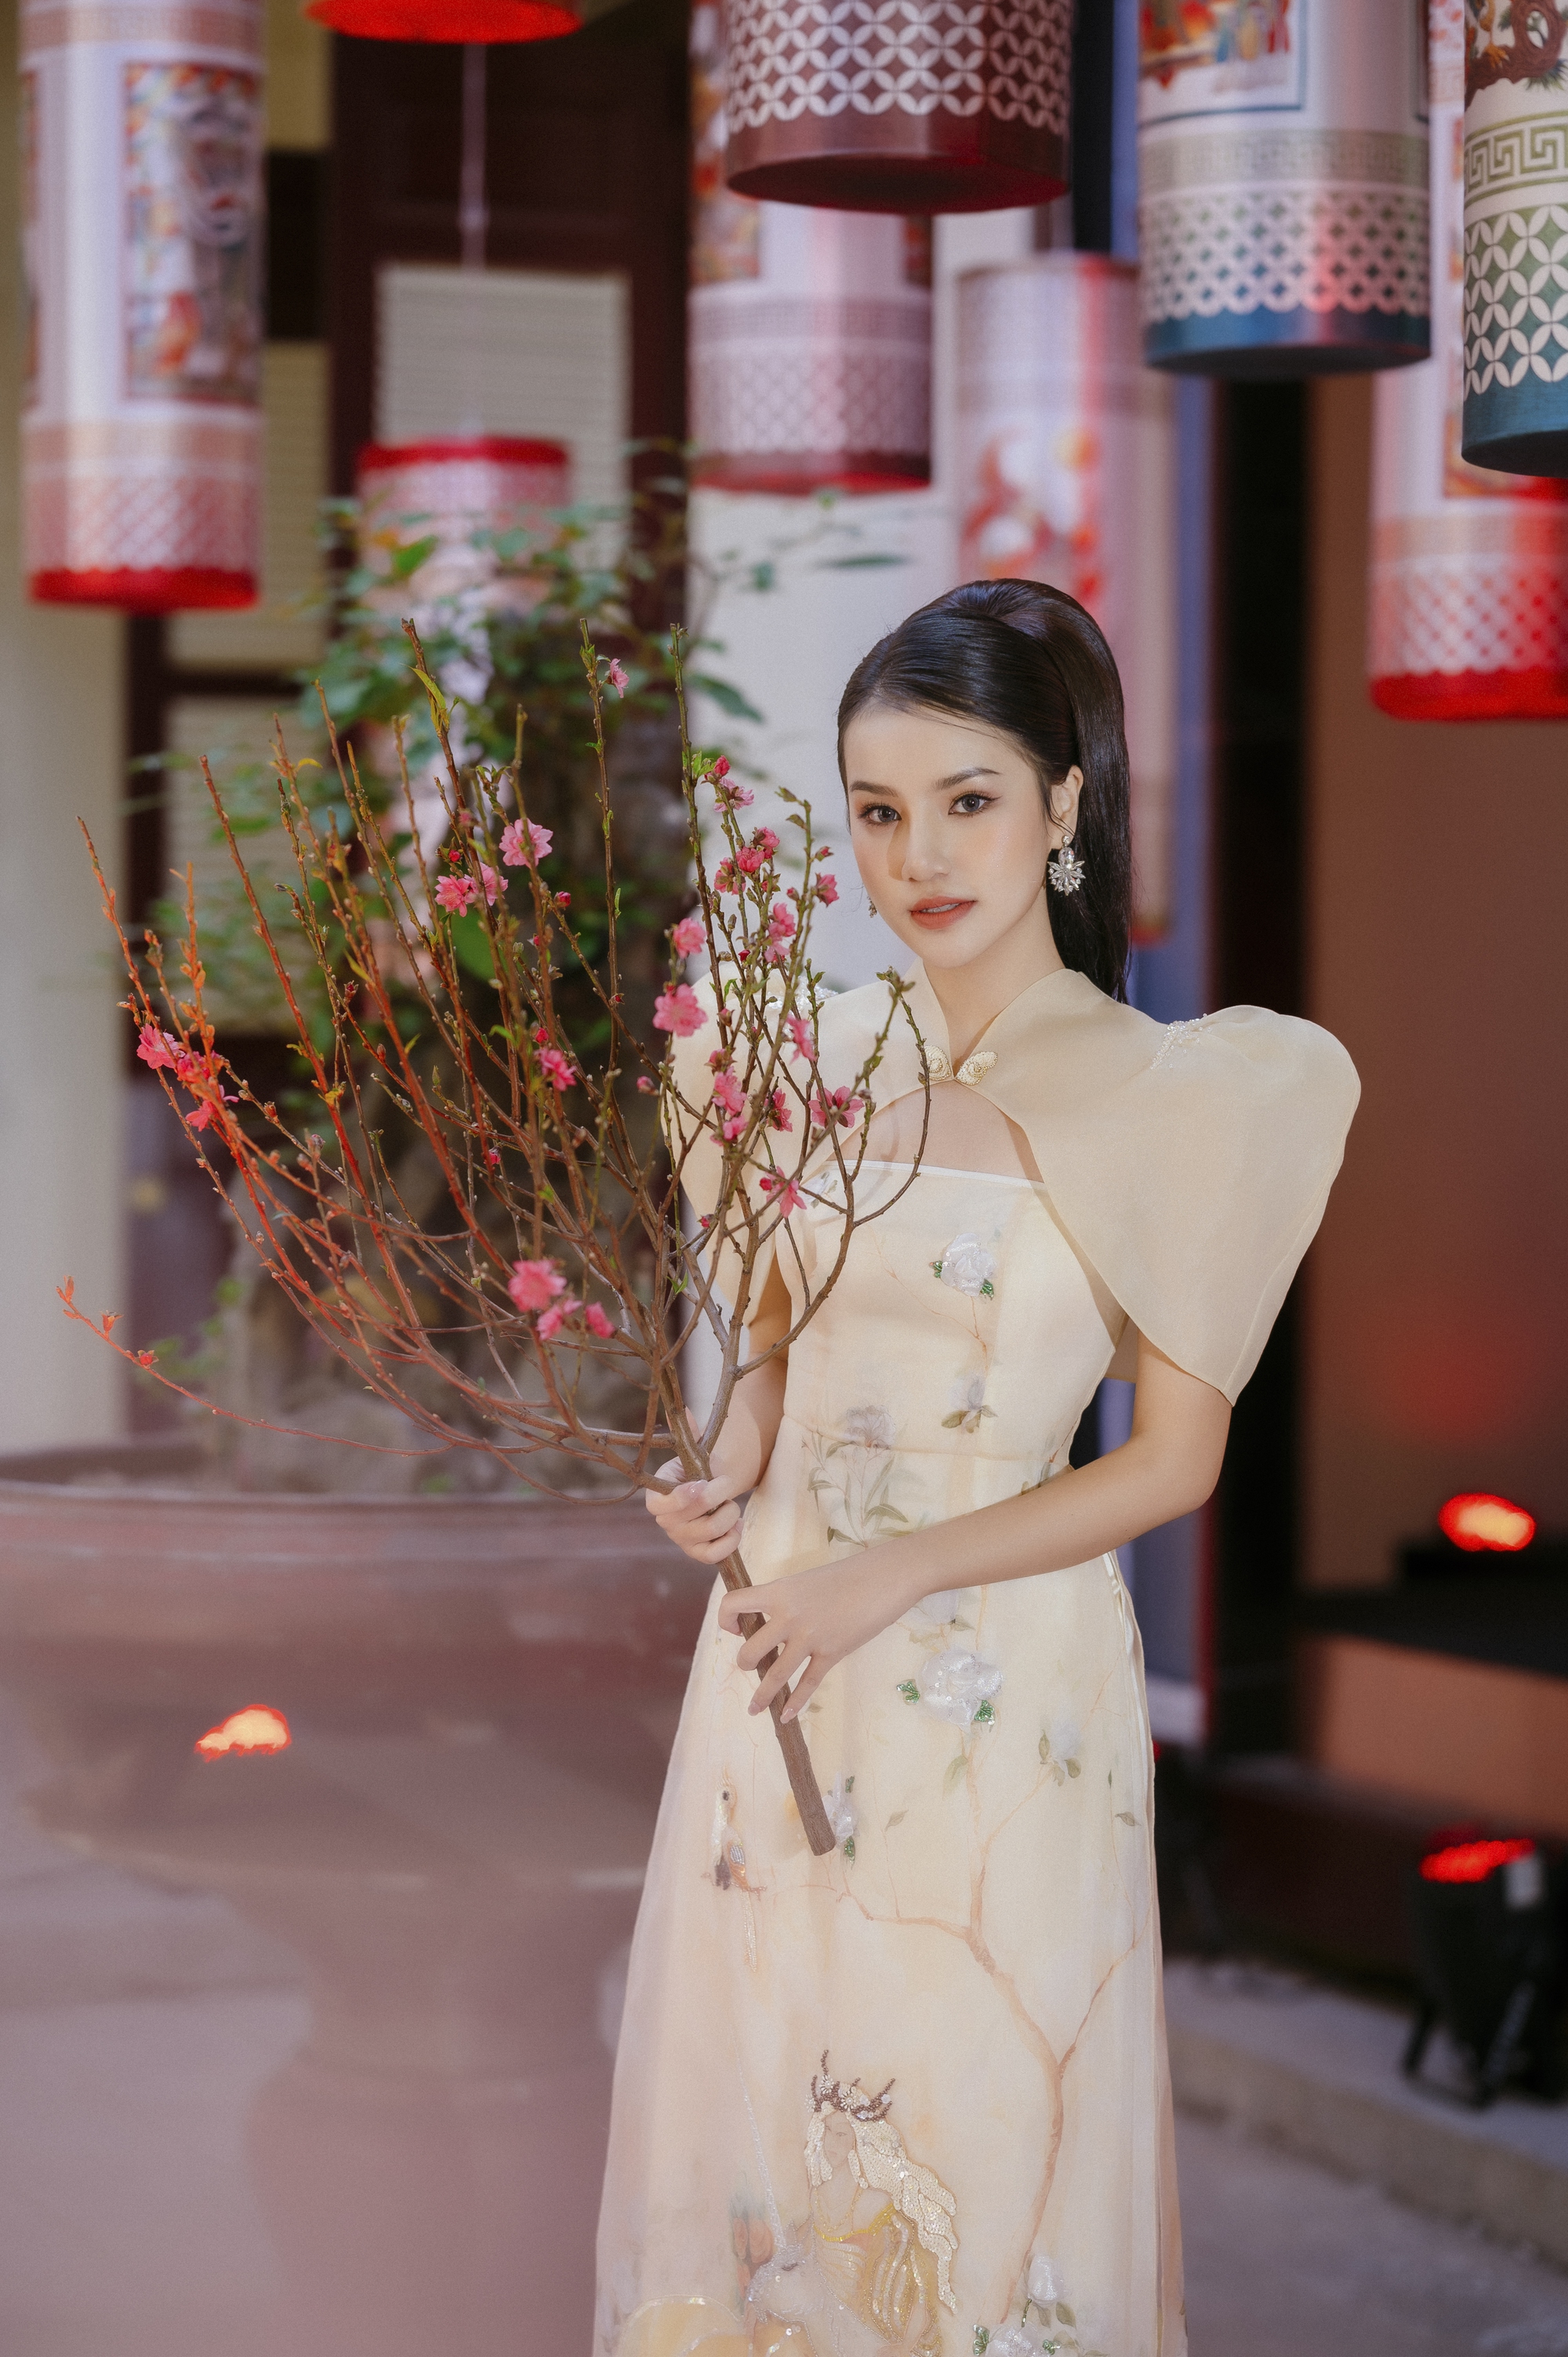 Á hậu Hương Ly khoe nhan sắc ngọt ngào trong những thiết kế áo dài đậm chất xuân - Ảnh 2.